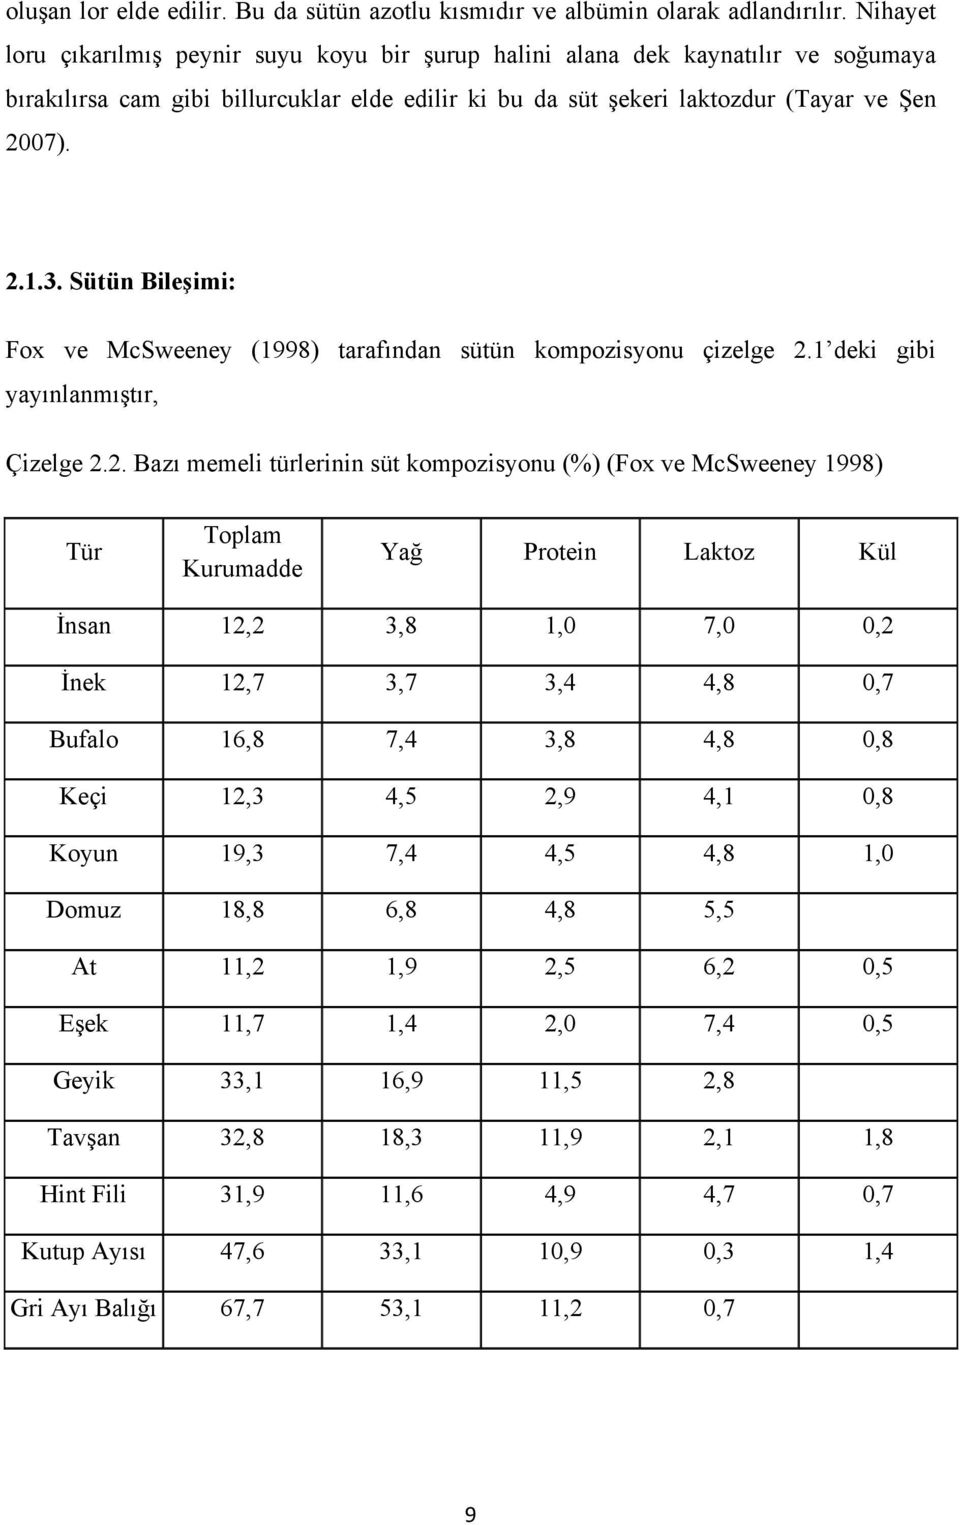 Sütün Bileşimi: Fox ve McSweeney (1998) tarafından sütün kompozisyonu çizelge 2.